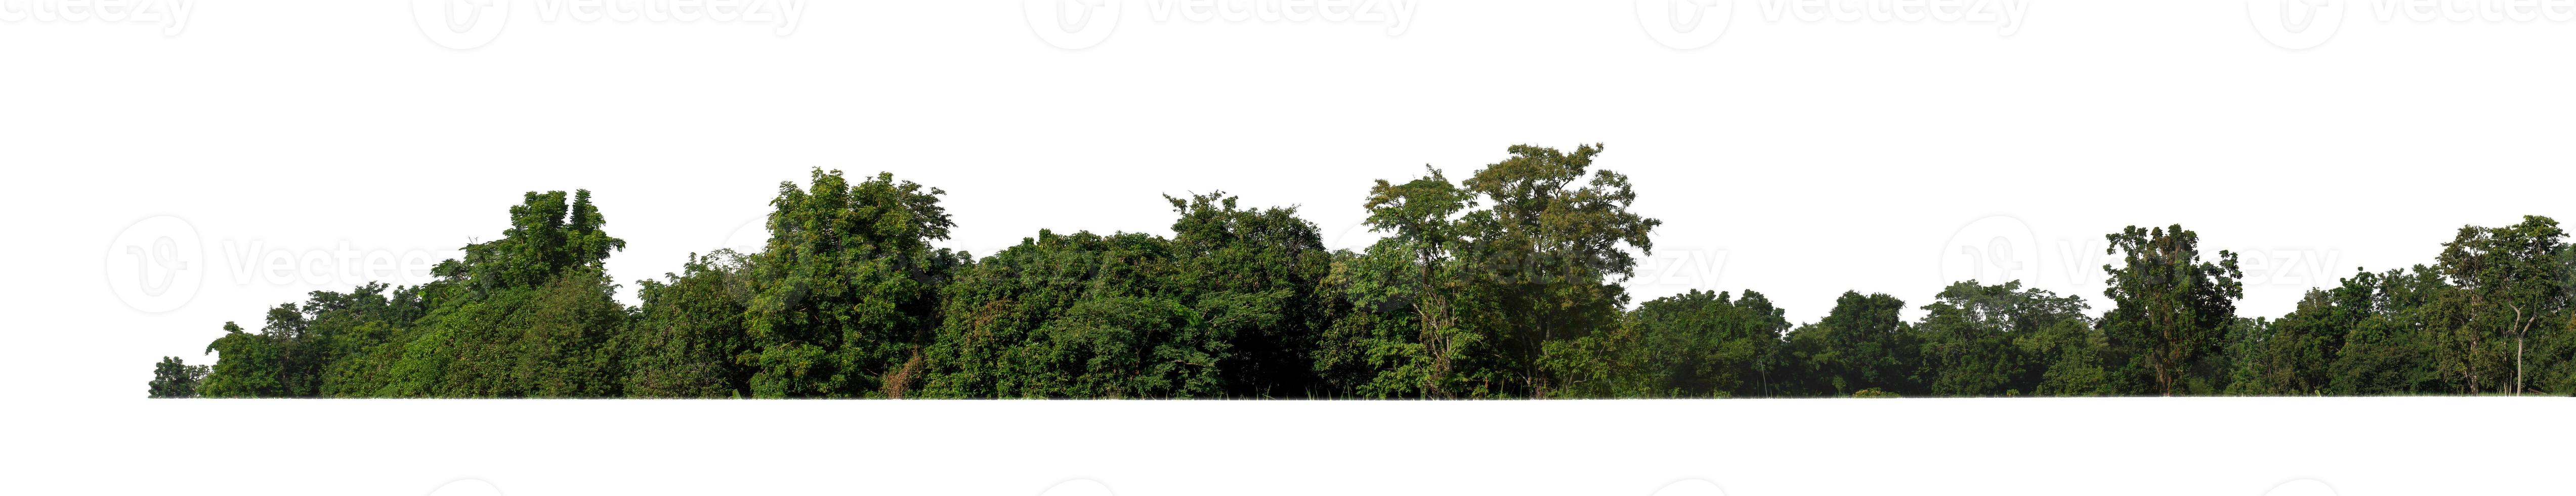 bosque y follaje en verano tanto para impresión como para páginas web aisladas en fondo blanco foto